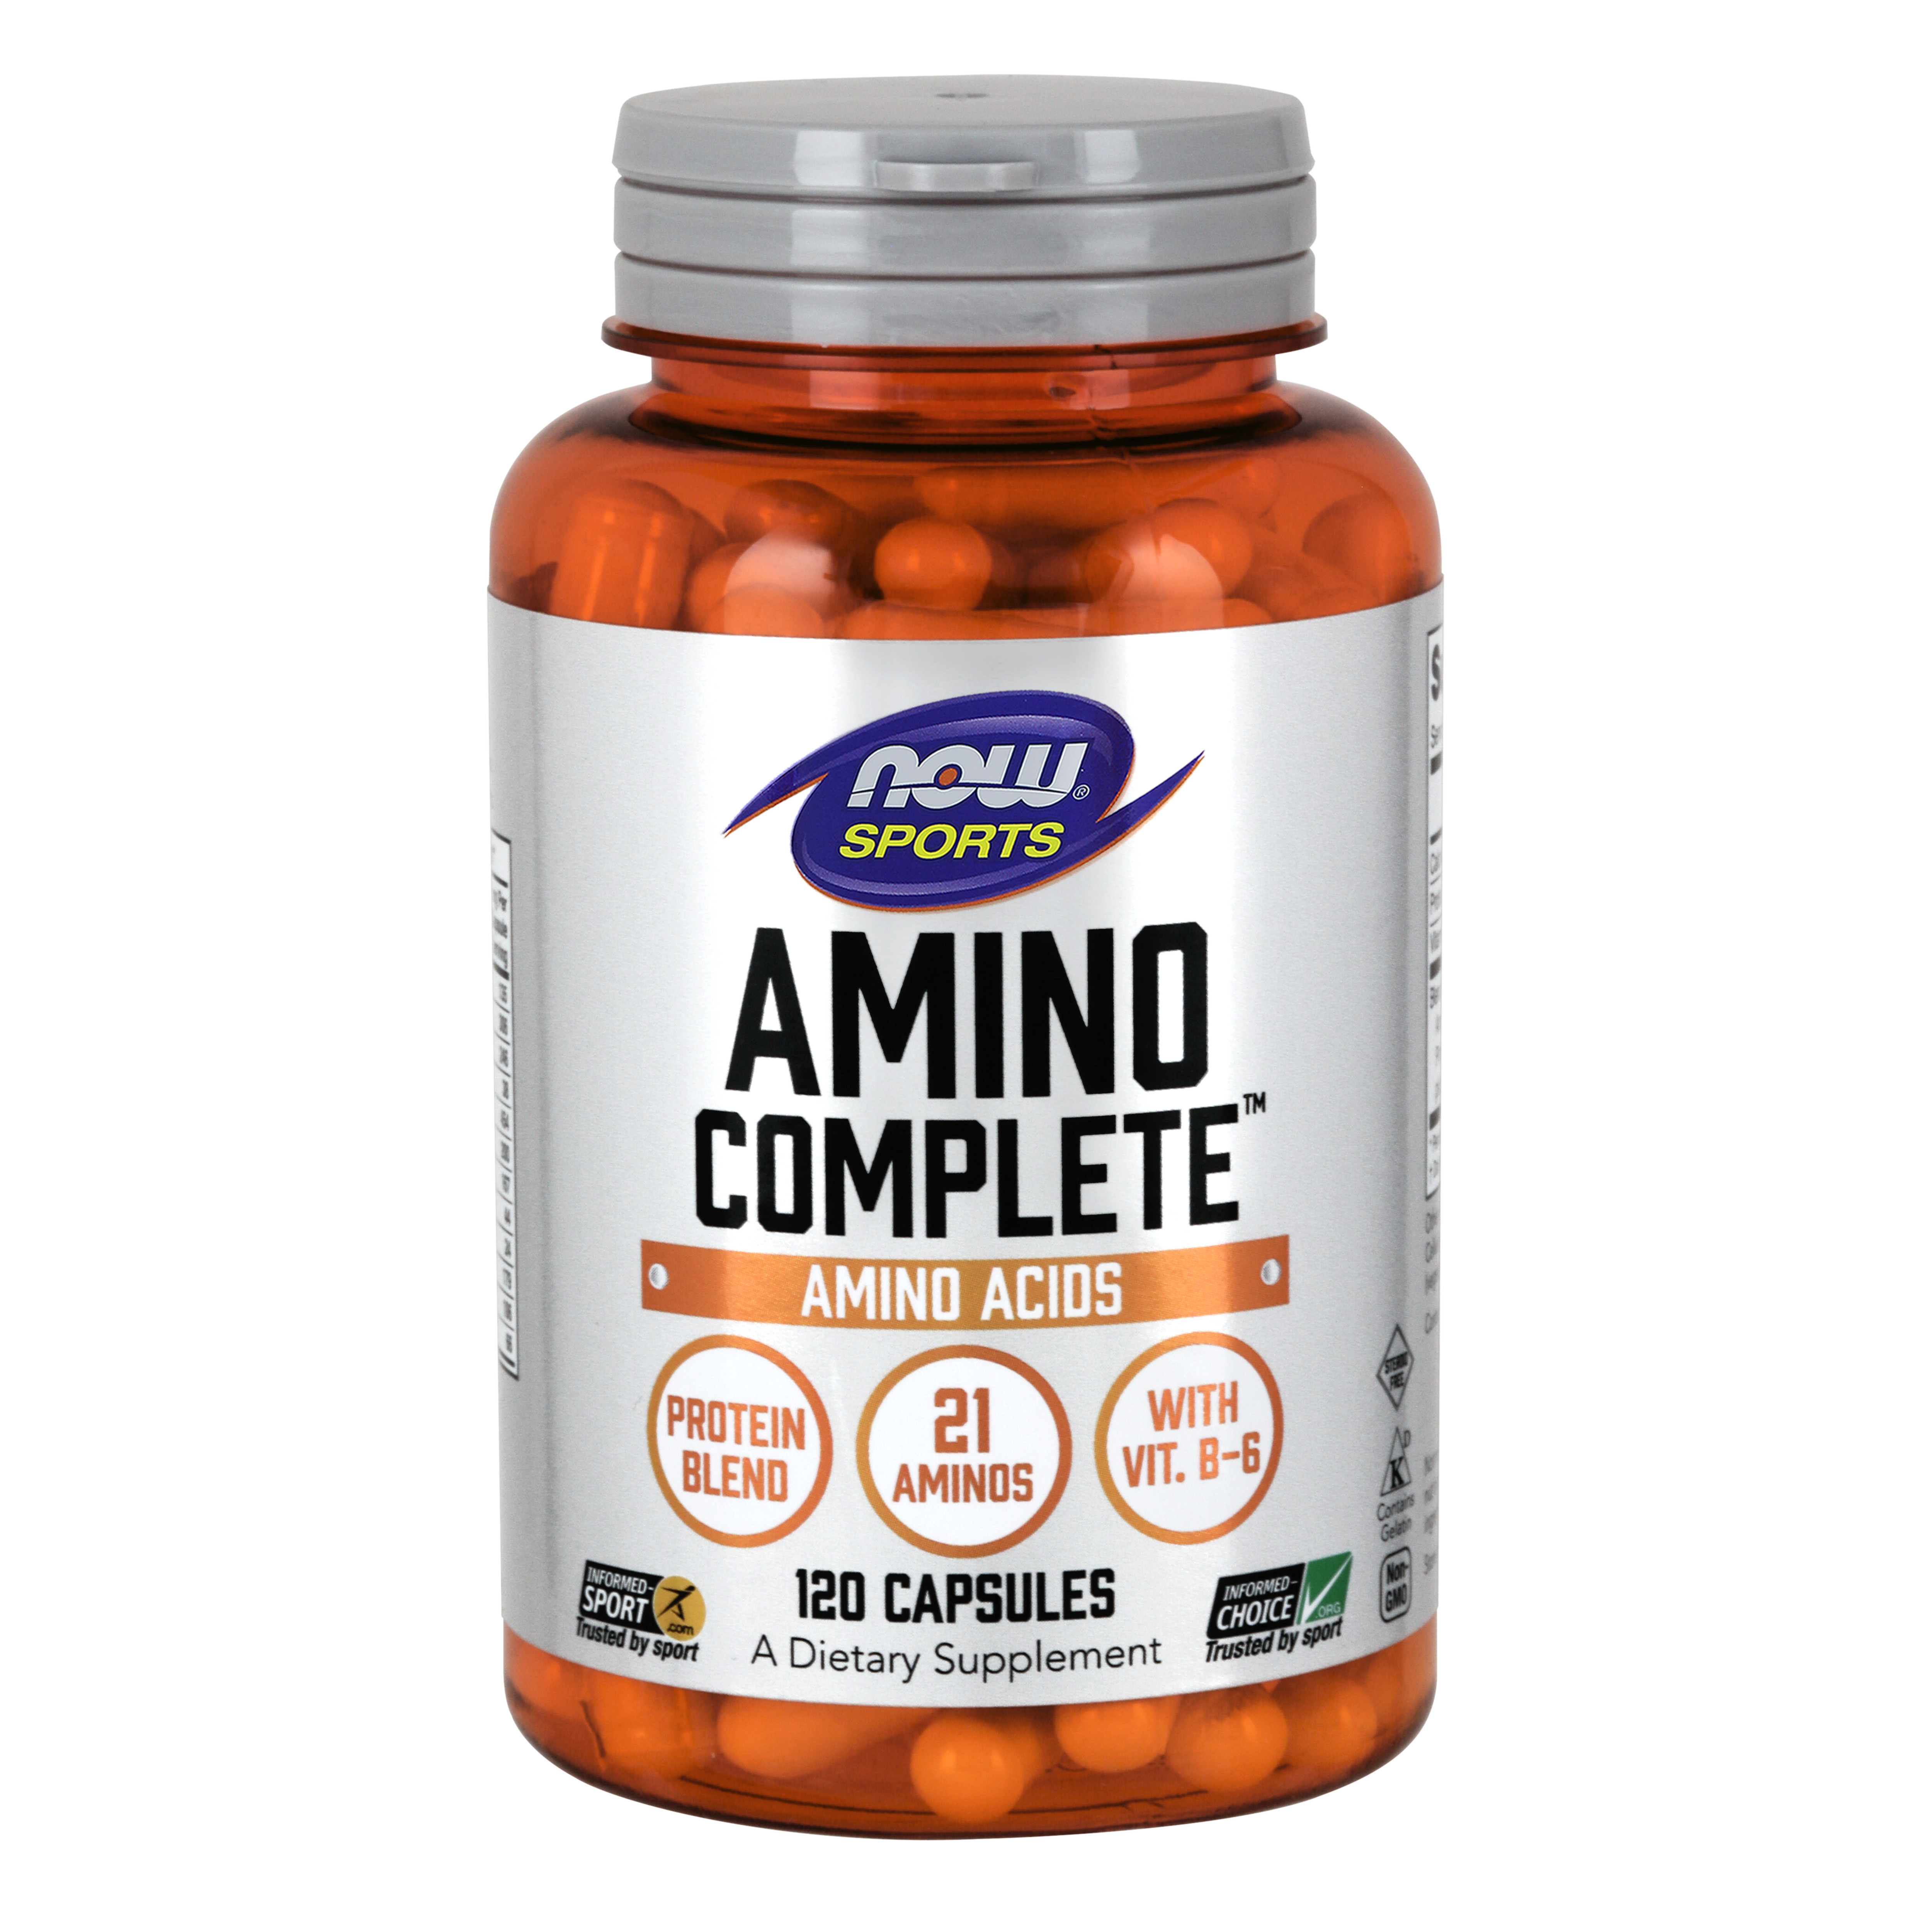 Thực phẩm bảo vệ sức khỏe Amino CompleteTM hãng Now foods Mỹ giúp bổ sung các axit amin cần thiết cho cơ thể